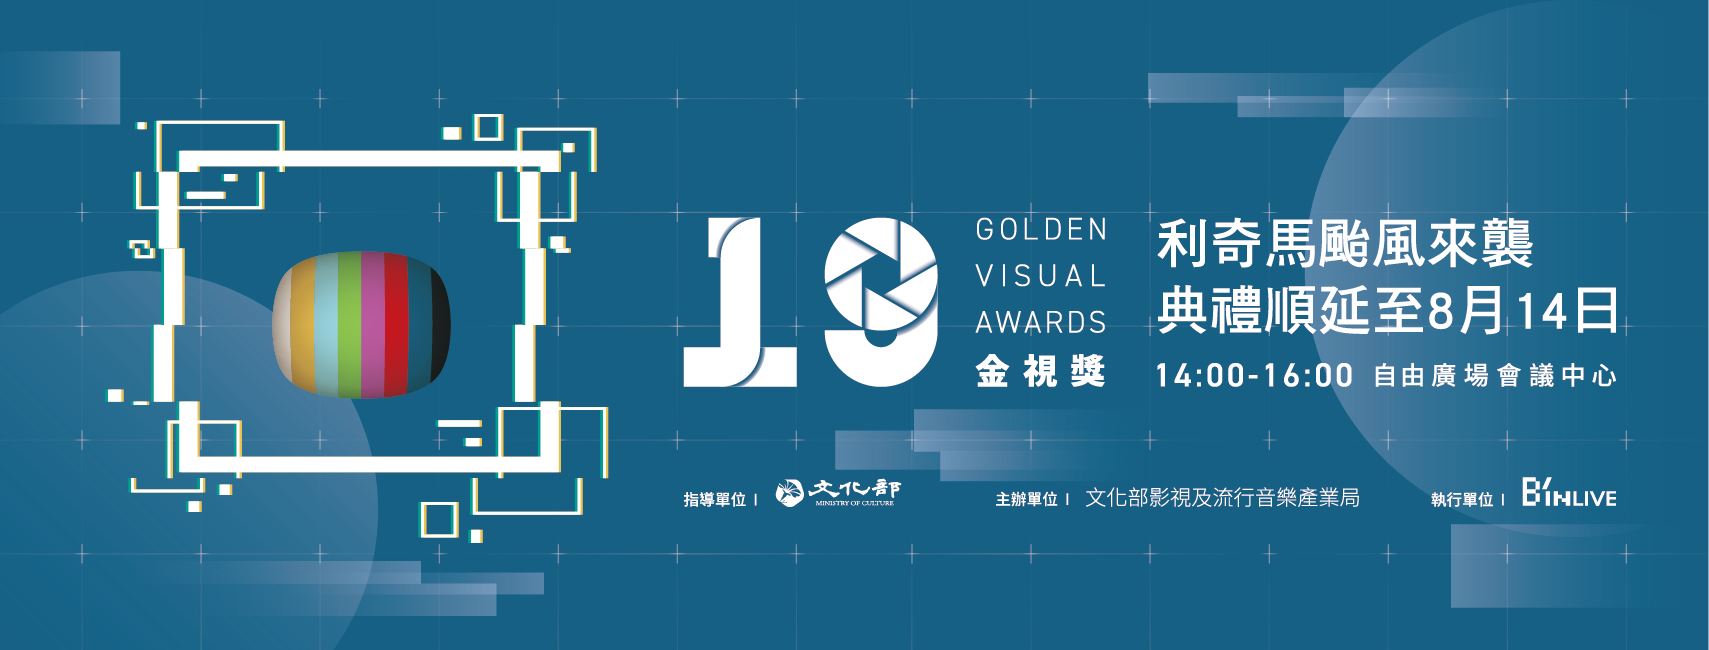 Golden Visual Awards.jpg